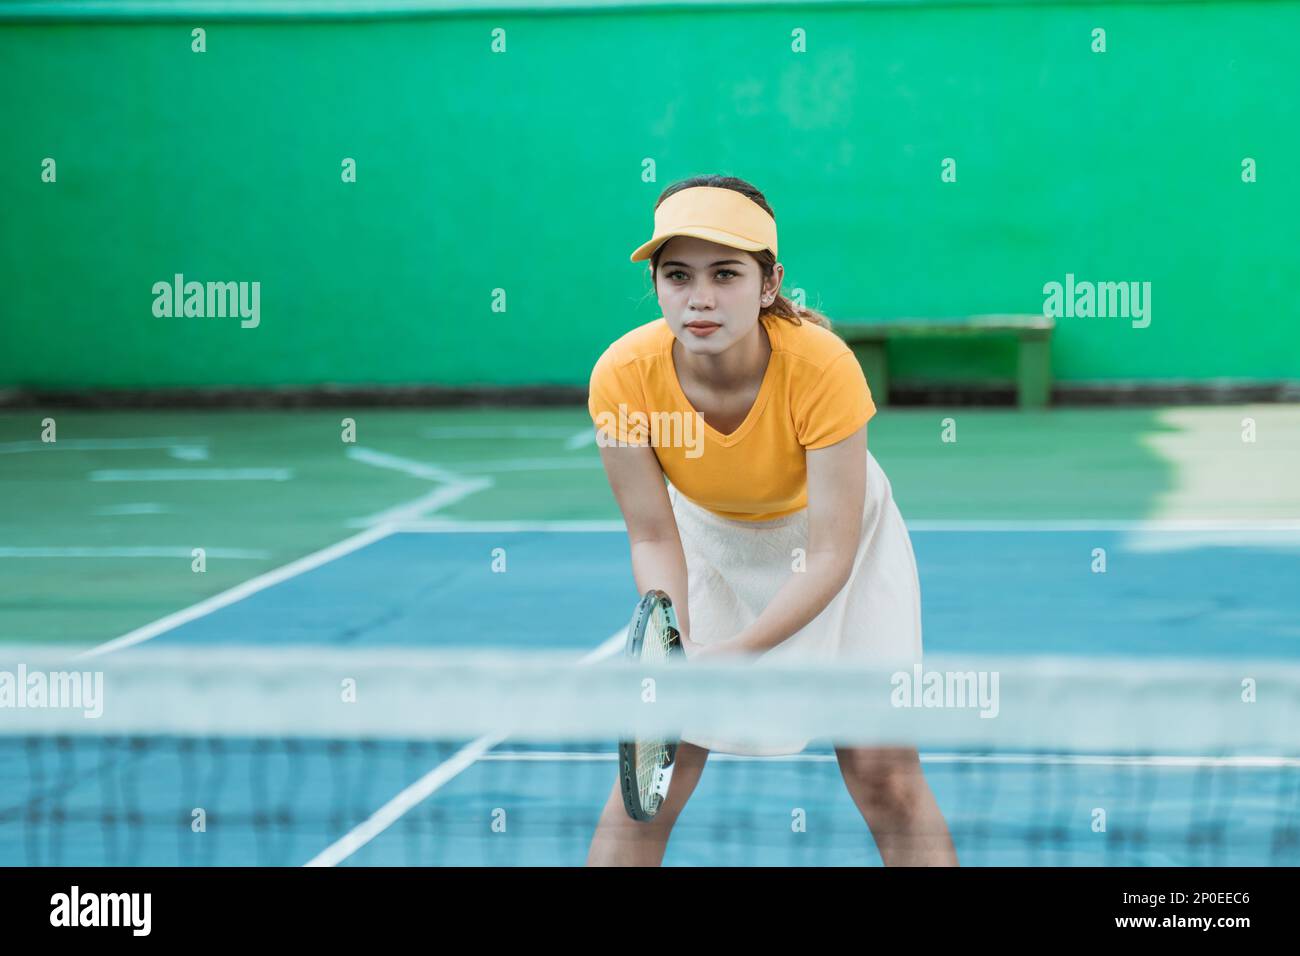 joueuse de tennis féminine se concentrant dans une position prête Banque D'Images